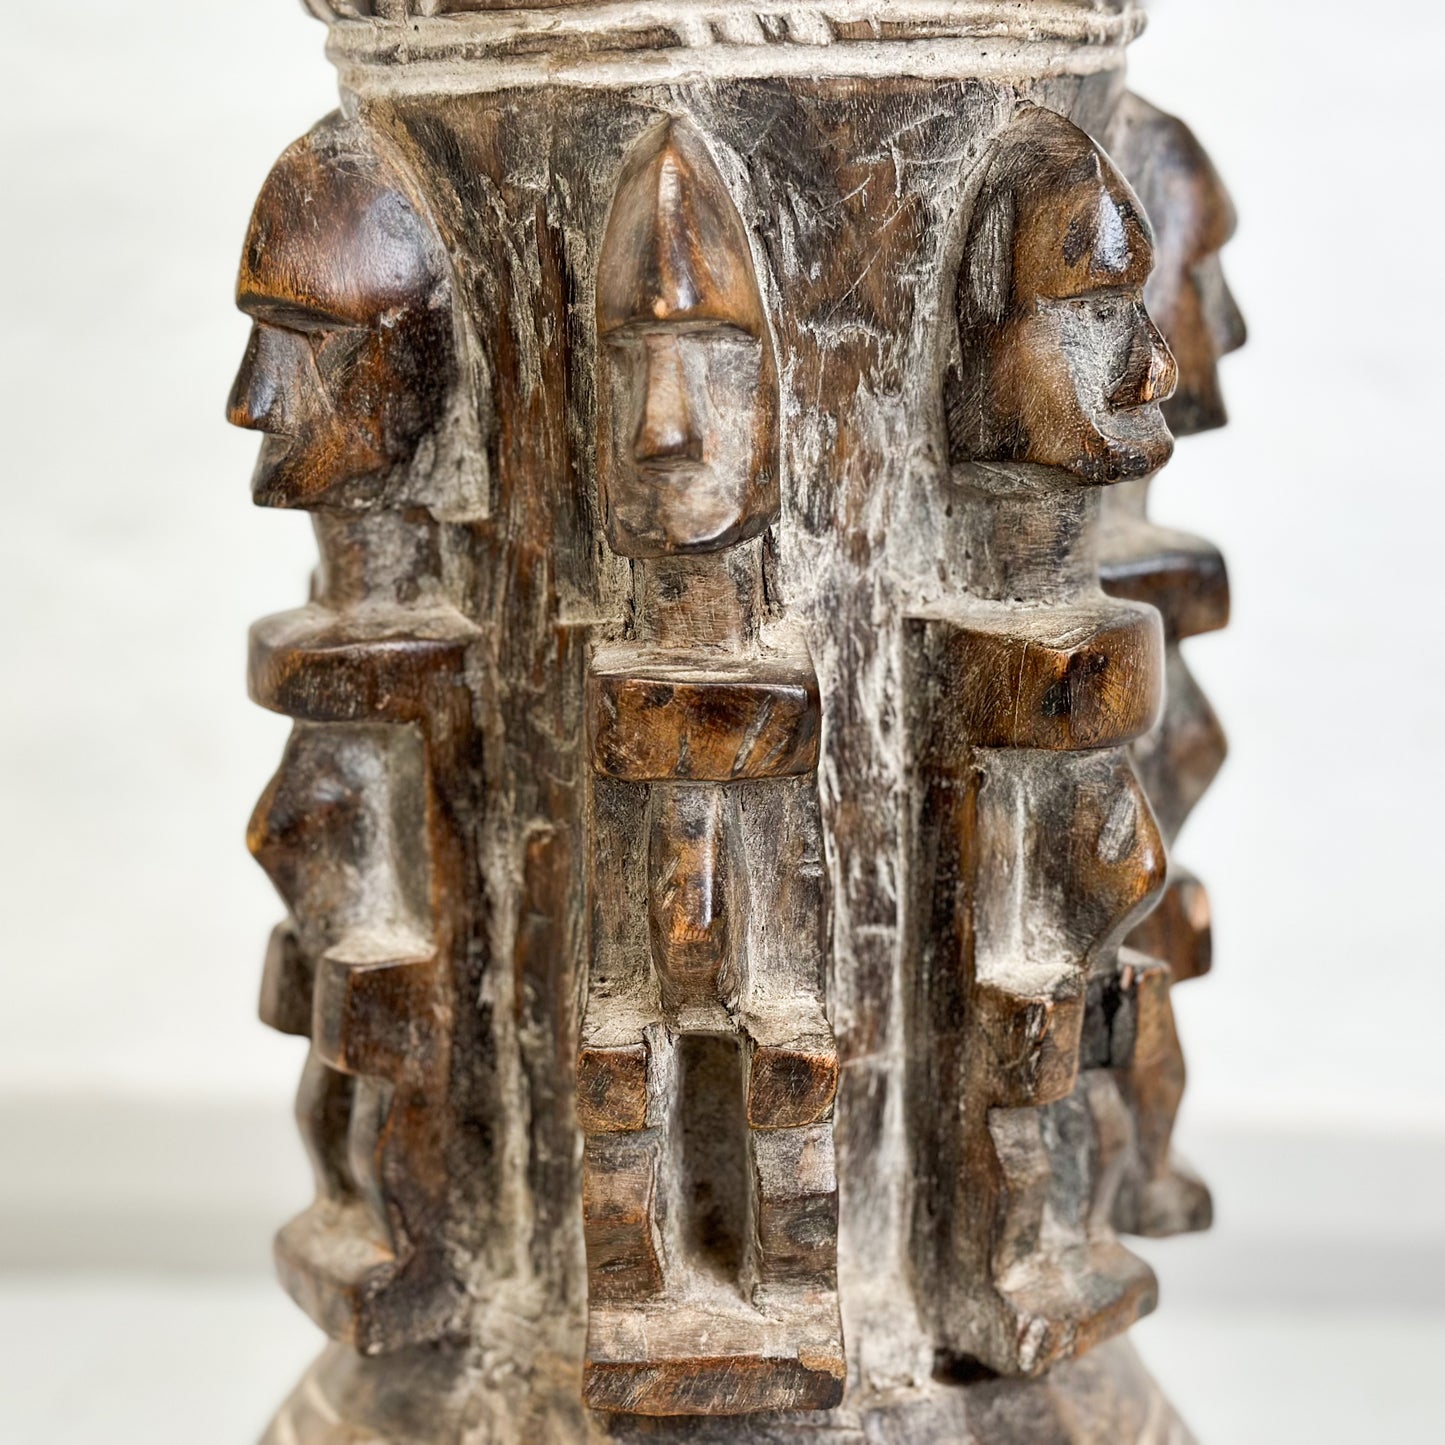 Vintage Baule Stool with Figures - Ivory Coast